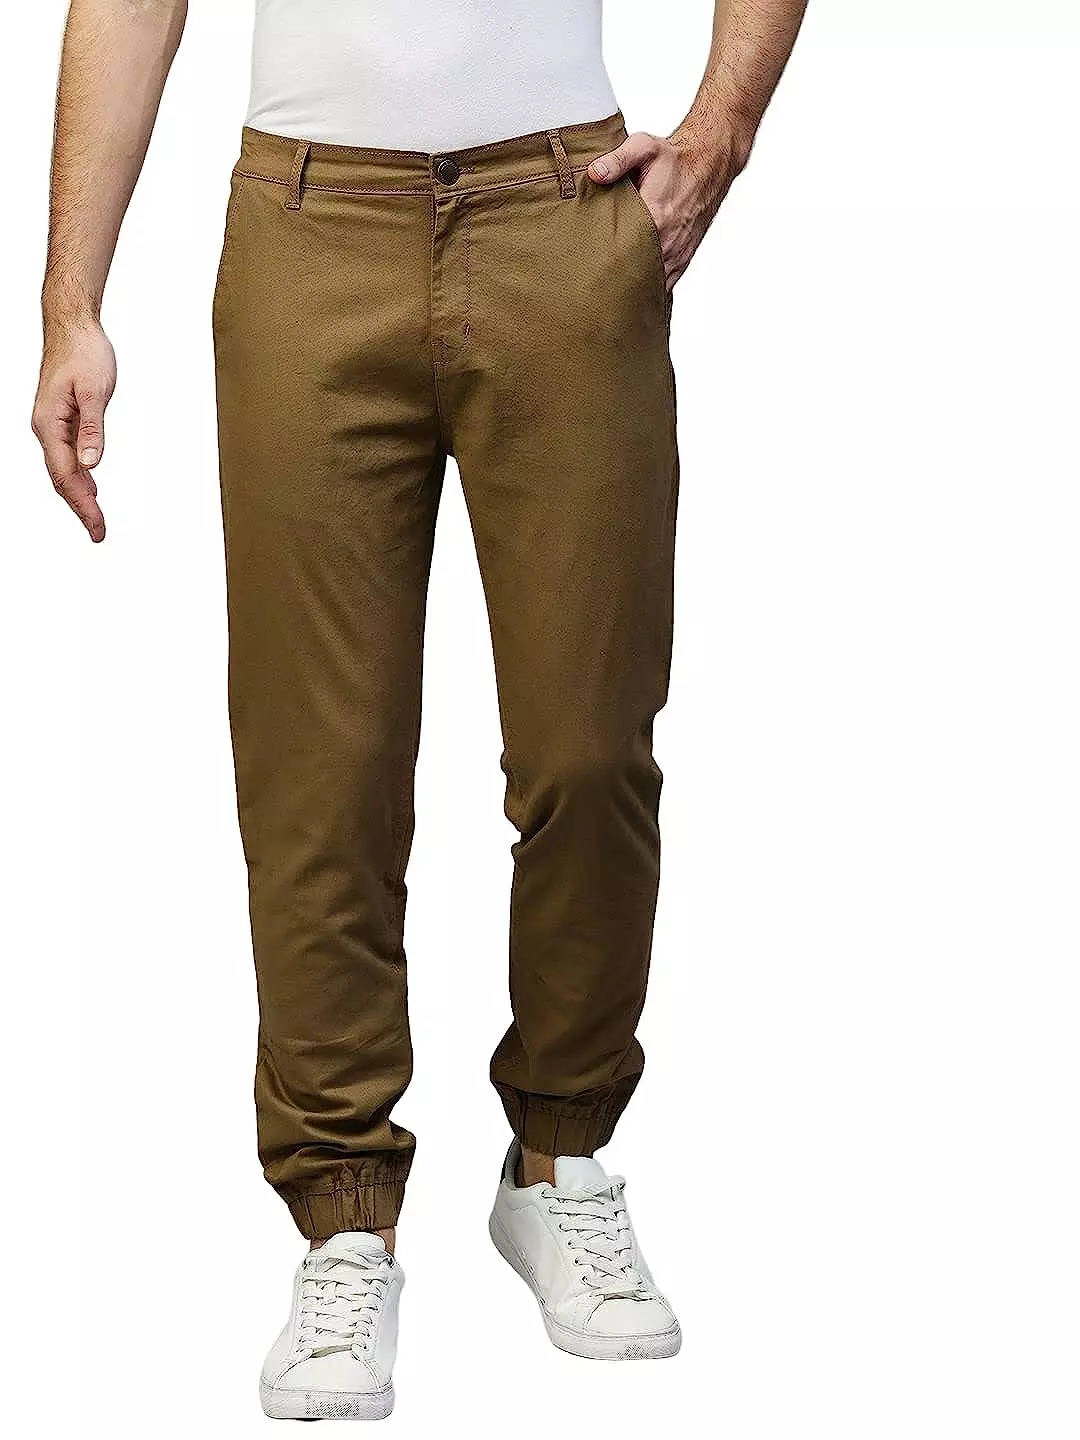 Coleman Brown Cargo Pants for Men